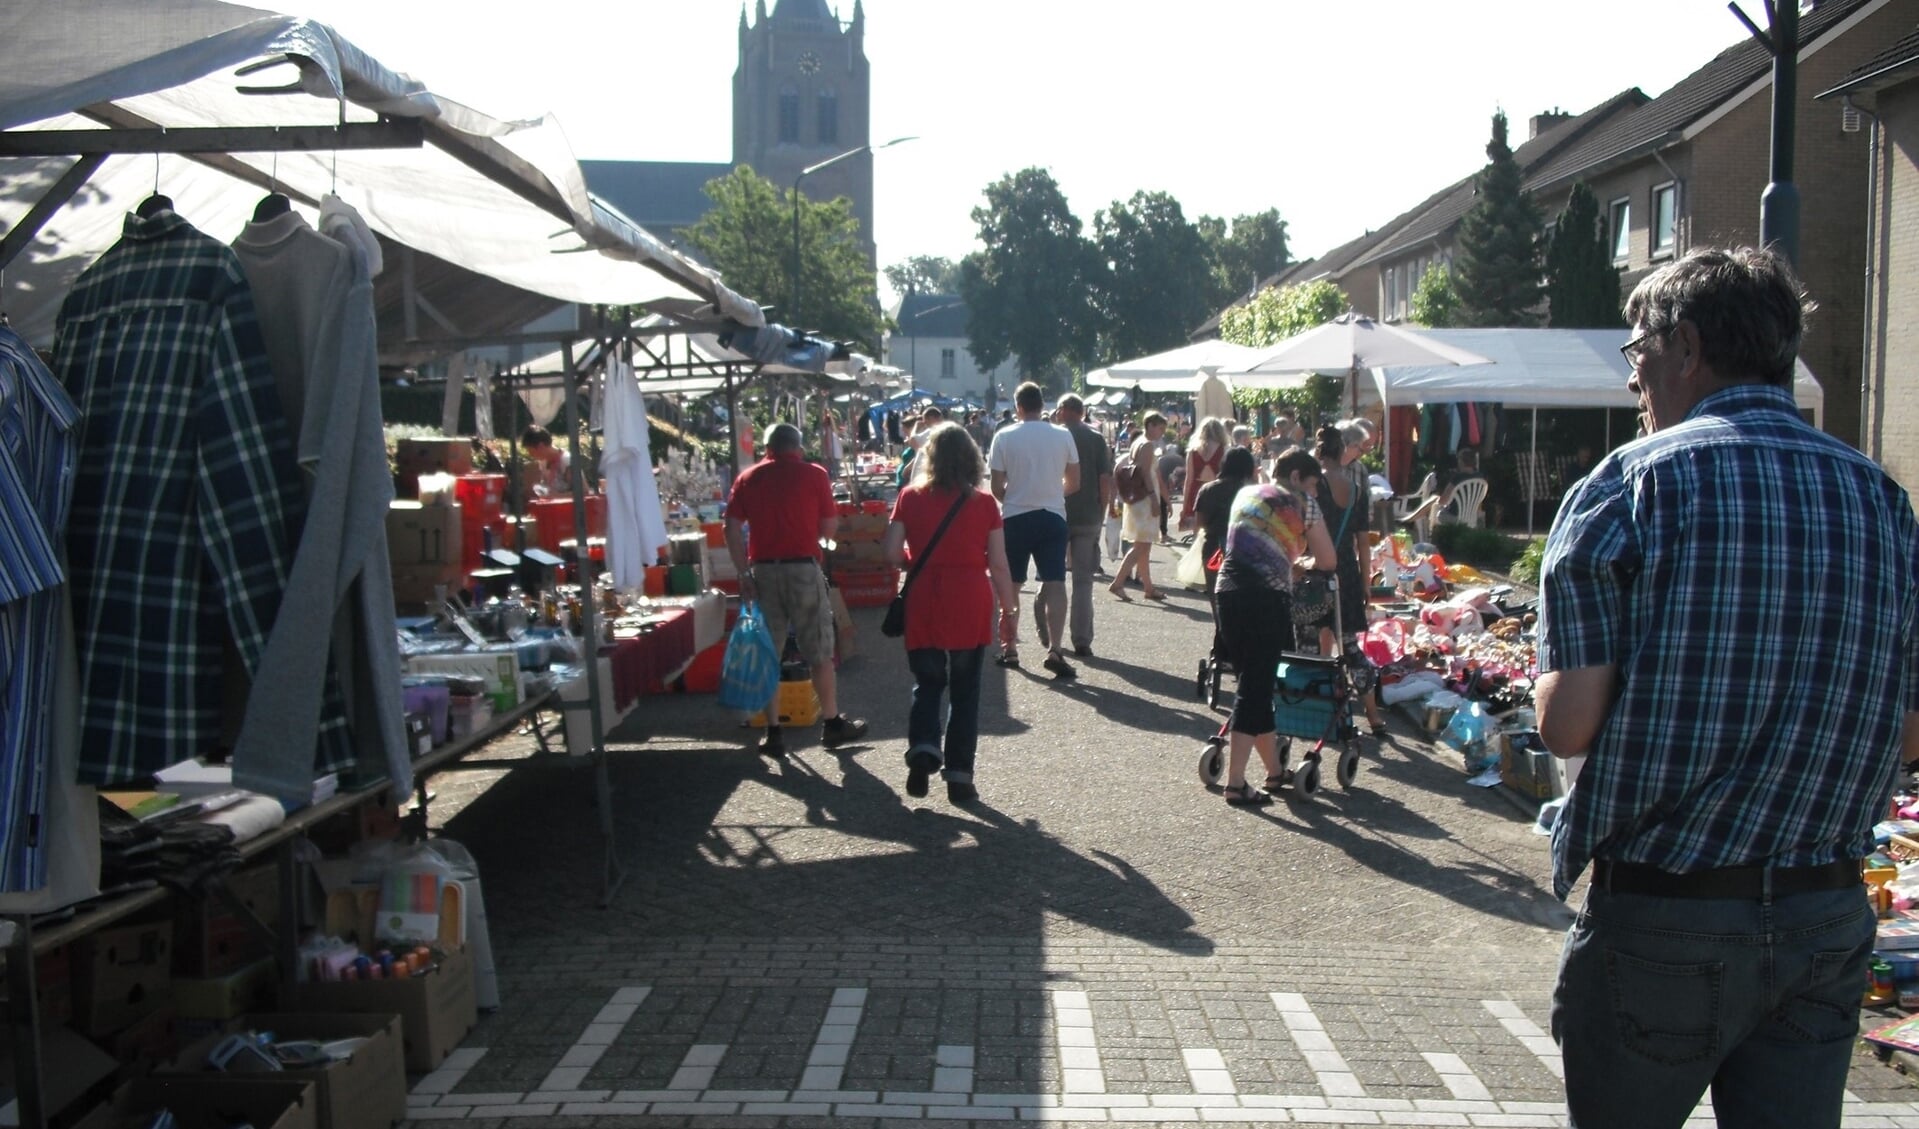 De rommelmarkt in Gassel vindt op zondag 14 juli alweer voor de 25ste keer plaats.